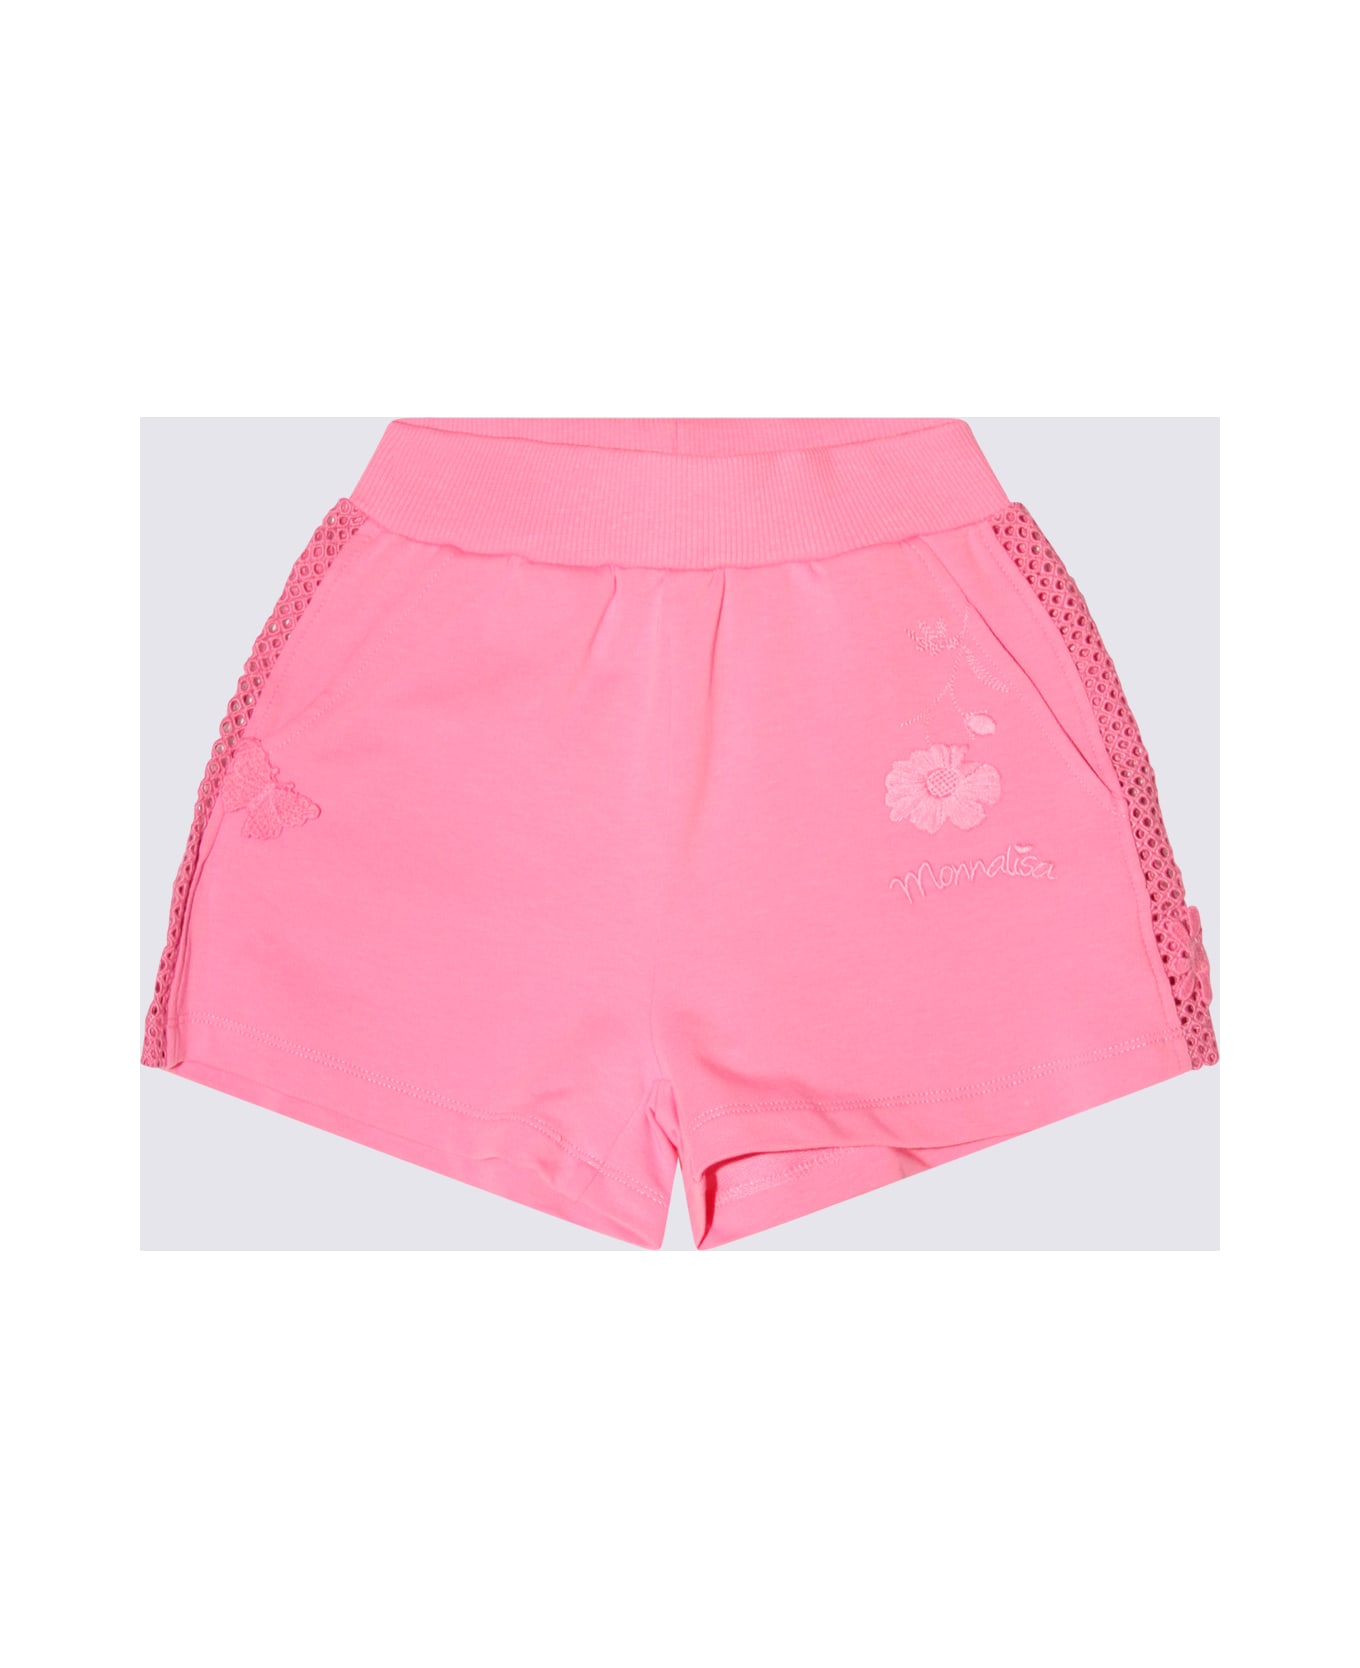 Monnalisa Pink Peach Cotton Shorts - Rosa Peach